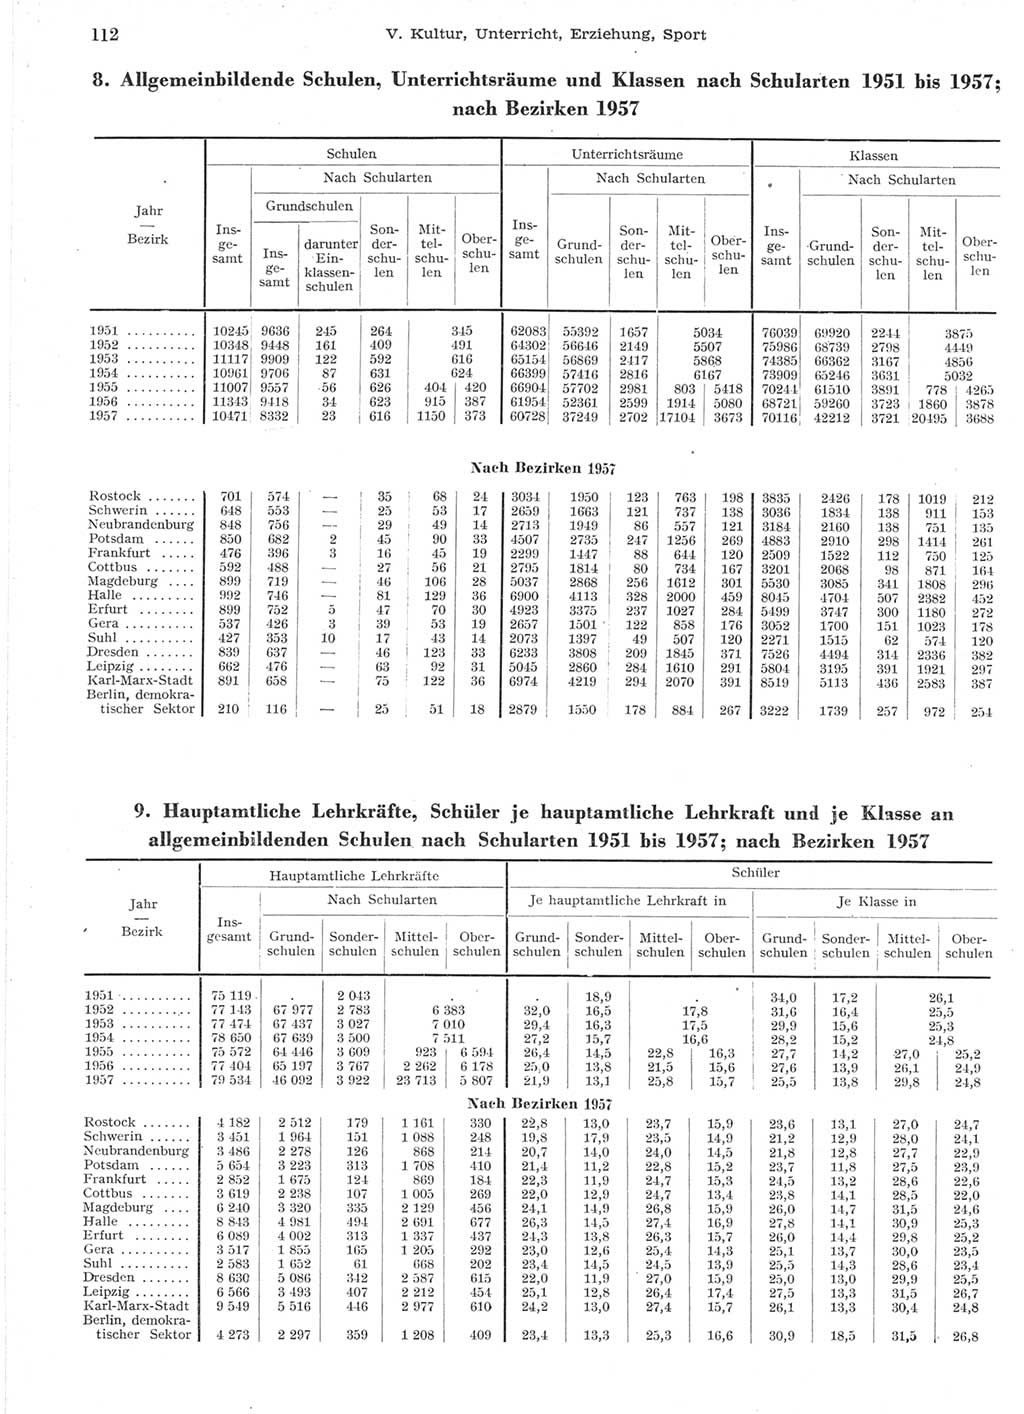 Statistisches Jahrbuch der Deutschen Demokratischen Republik (DDR) 1957, Seite 112 (Stat. Jb. DDR 1957, S. 112)